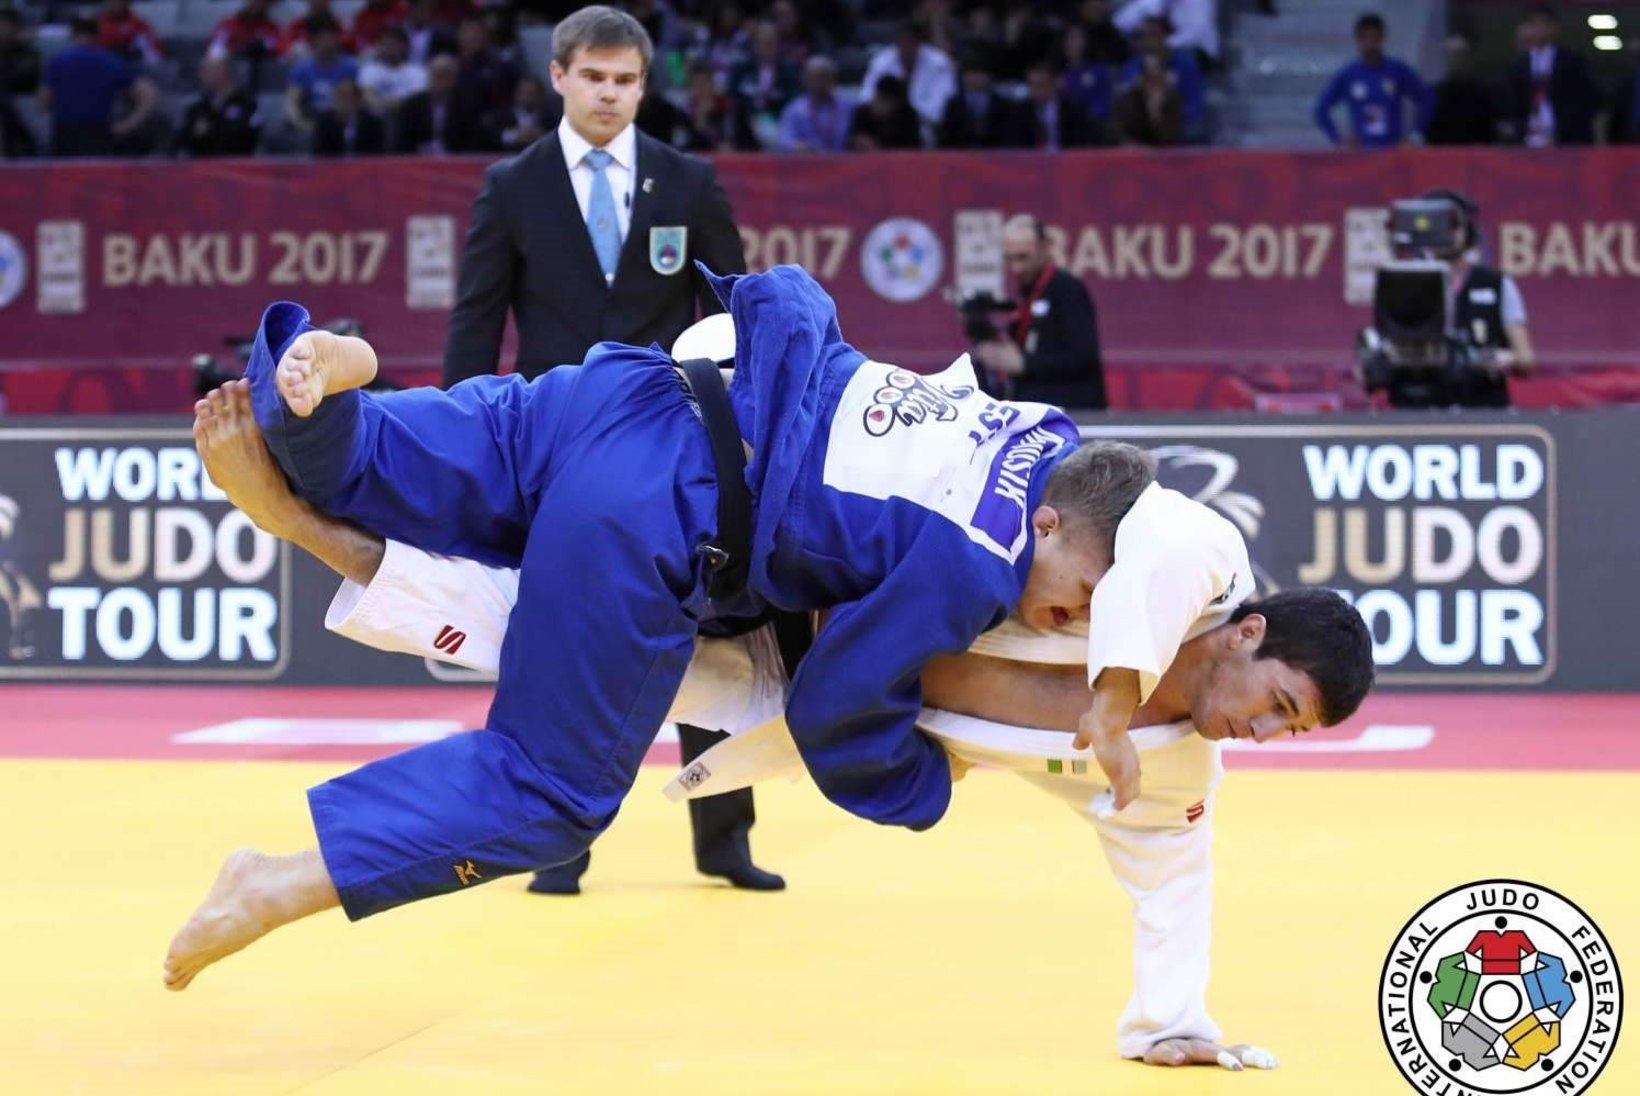 OHHOO: Eesti judoka tõuseb maailma edetabelis rohkem kui 200 koha võrra